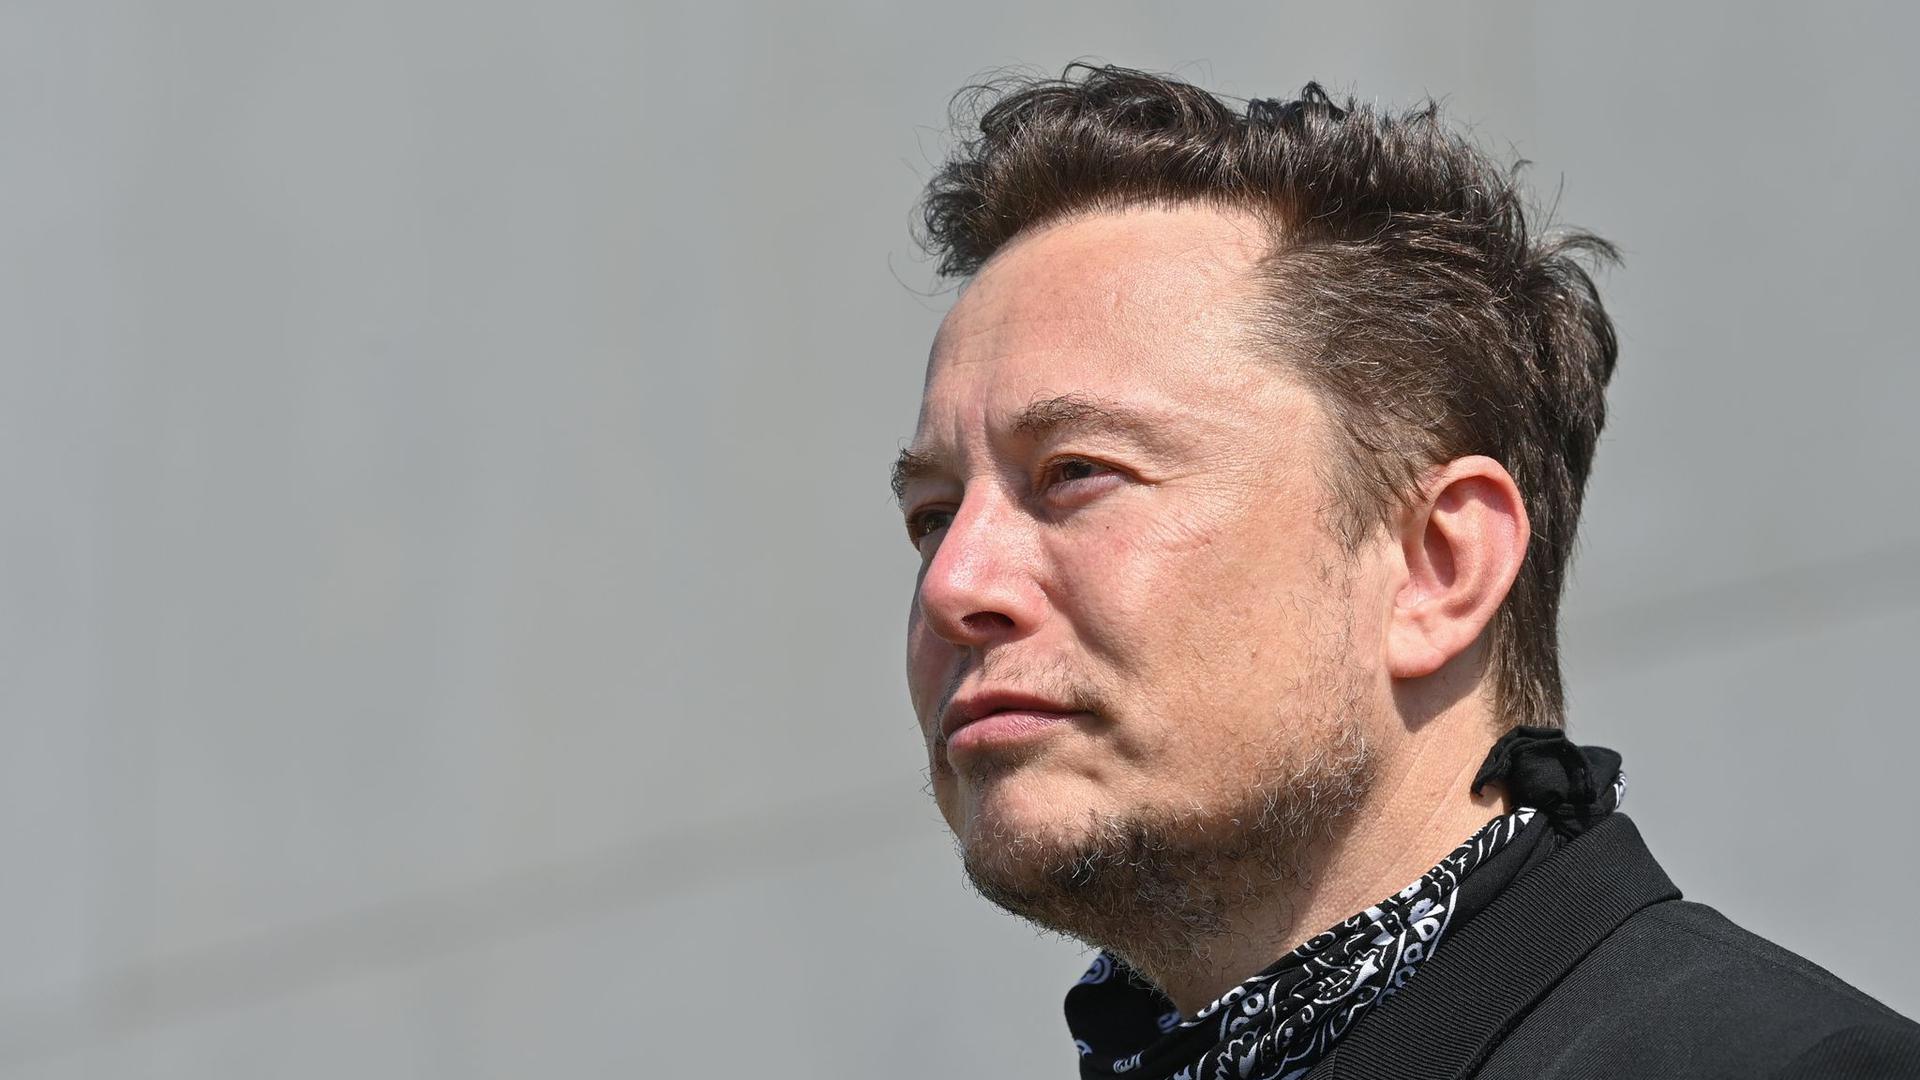 Das Vermögen von Tesla-Gründer Elon Musk wird auf umgerechnet etwa 260 Milliarden Euro geschätzt.